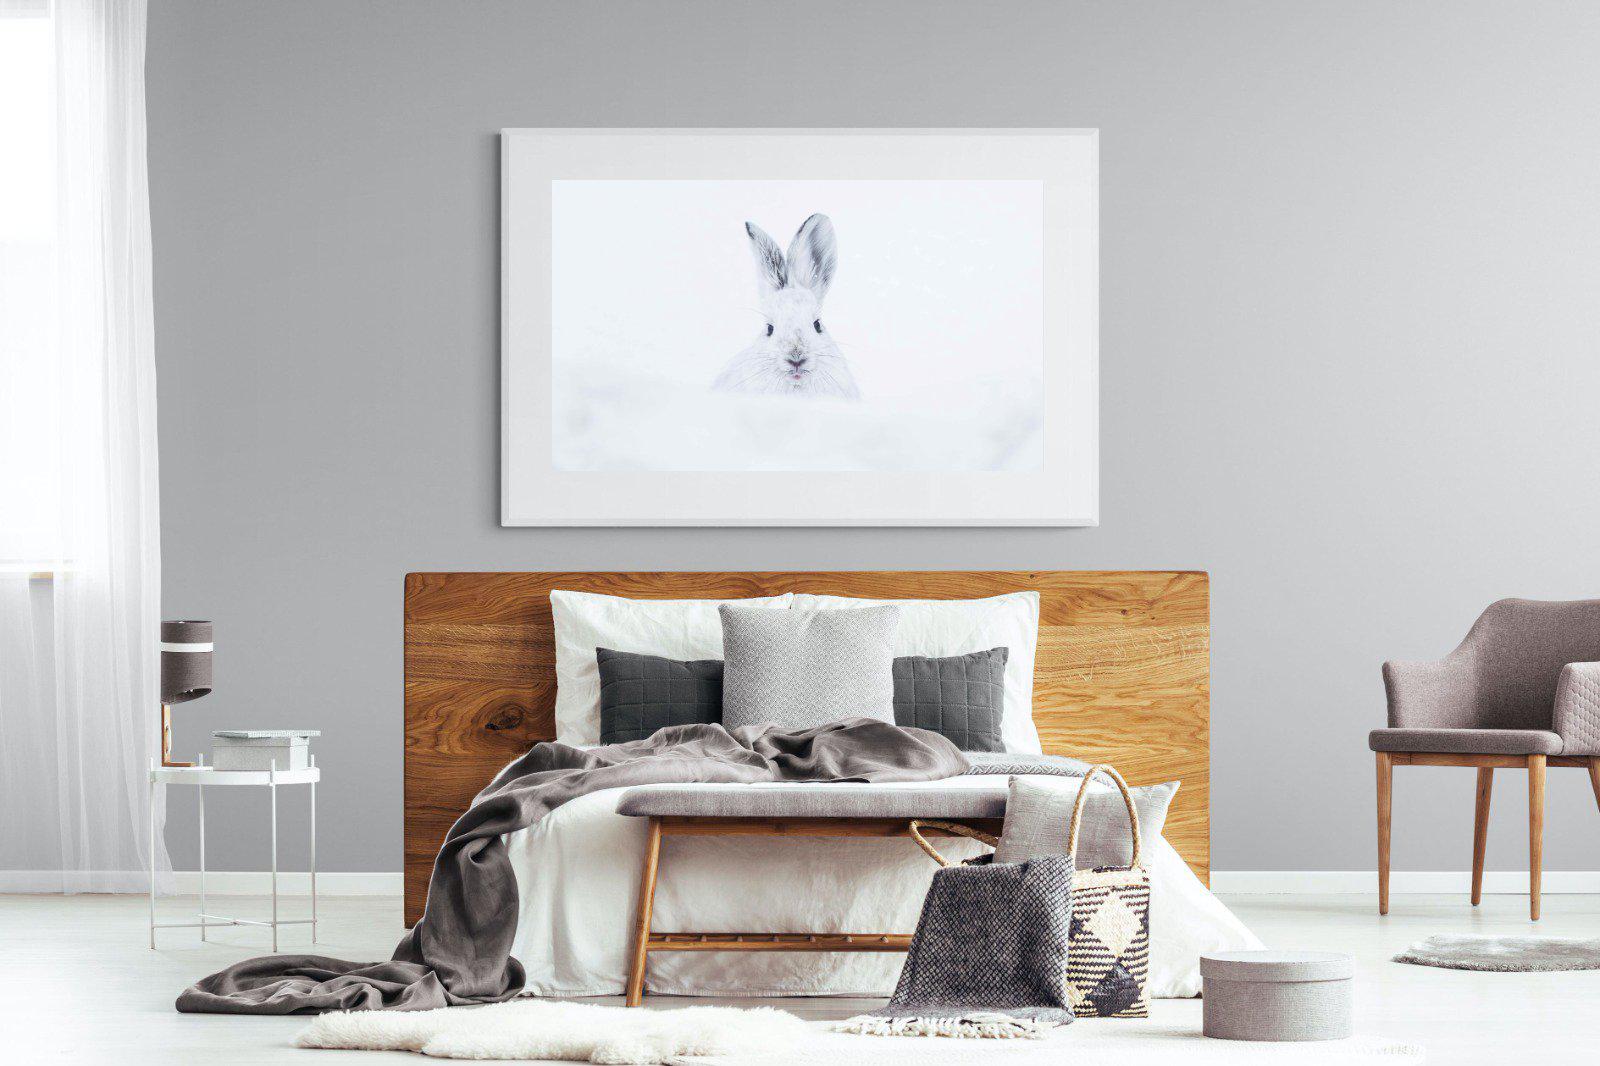 Hare-Wall_Art-150 x 100cm-Framed Print-White-Pixalot